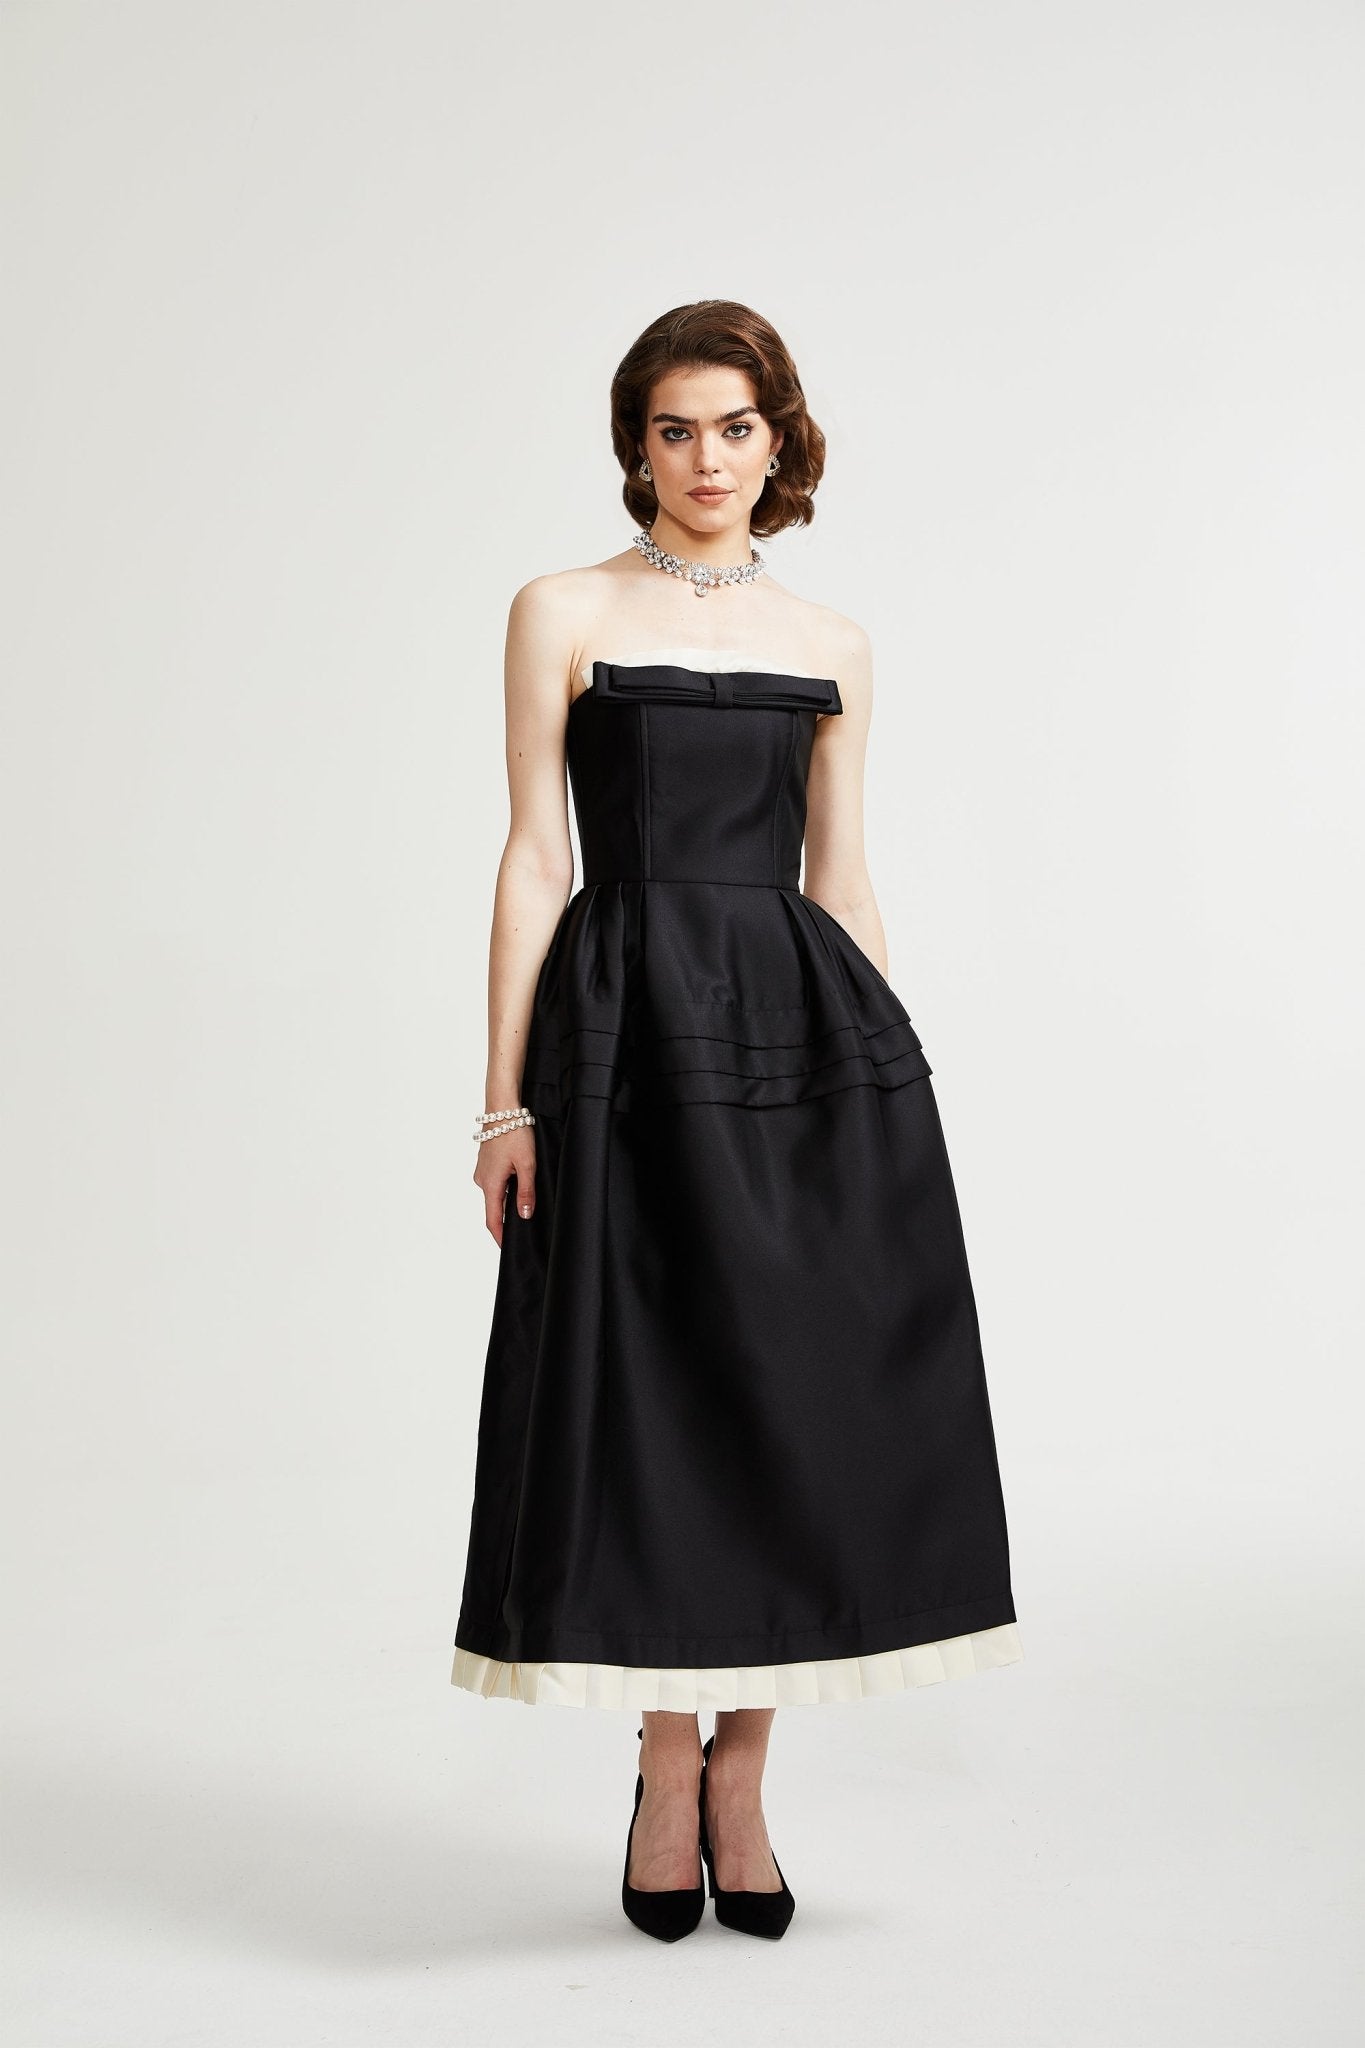 Felisara Chanel dress - Miss Rosier - Women's Online Boutique